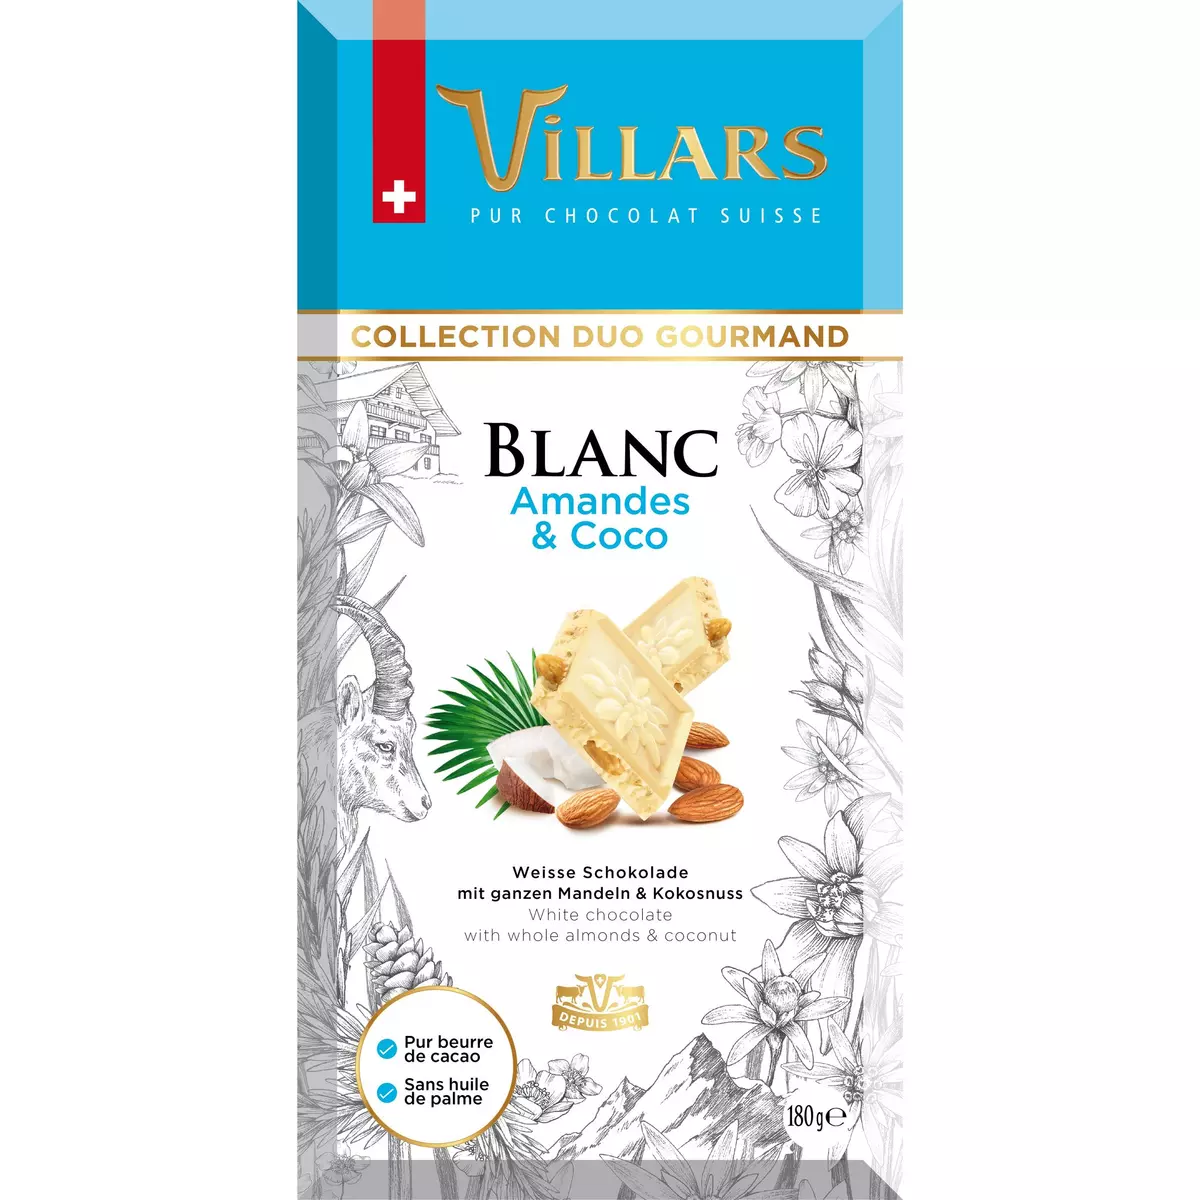 VILLARS Tablette de chocolat blanc amandes et coco 180g